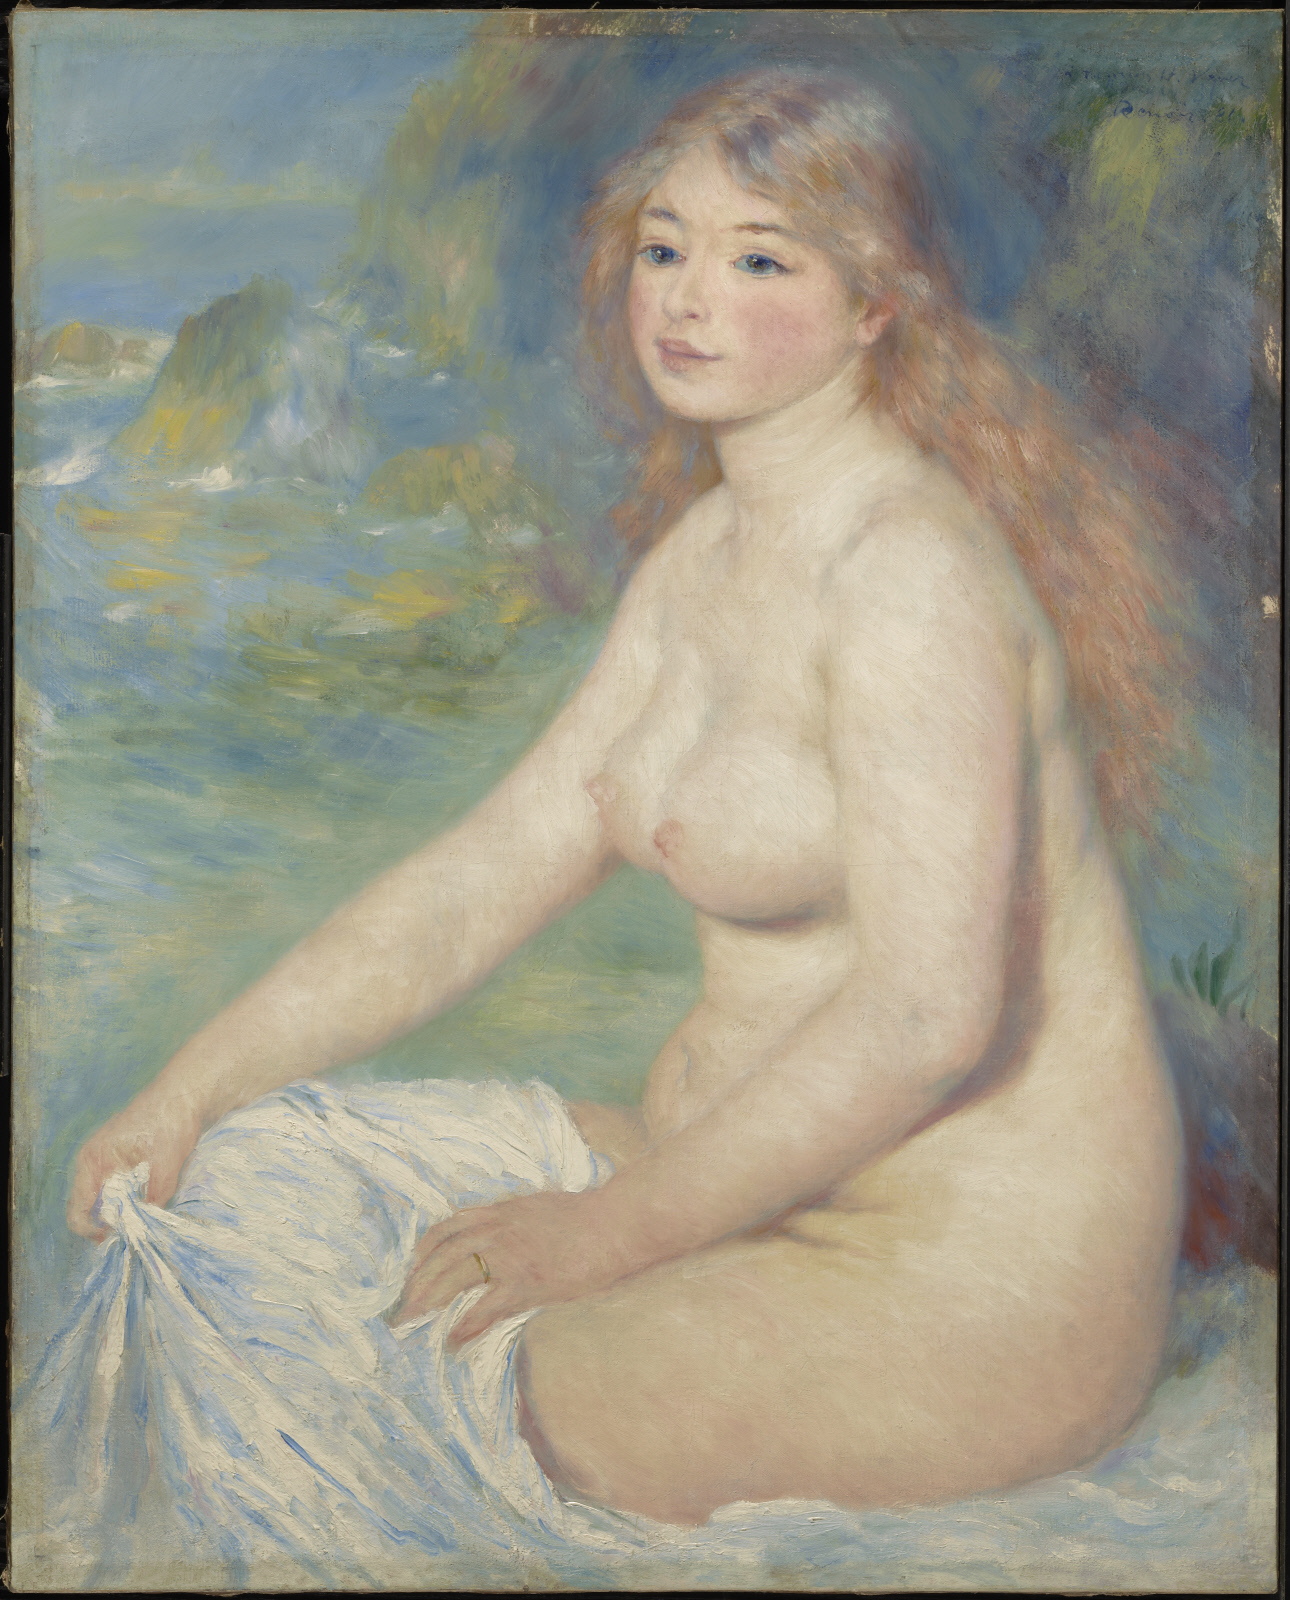 Білява купальниця by Pierre-Auguste Renoir - 1881 - 81.6 х 65.4 см 